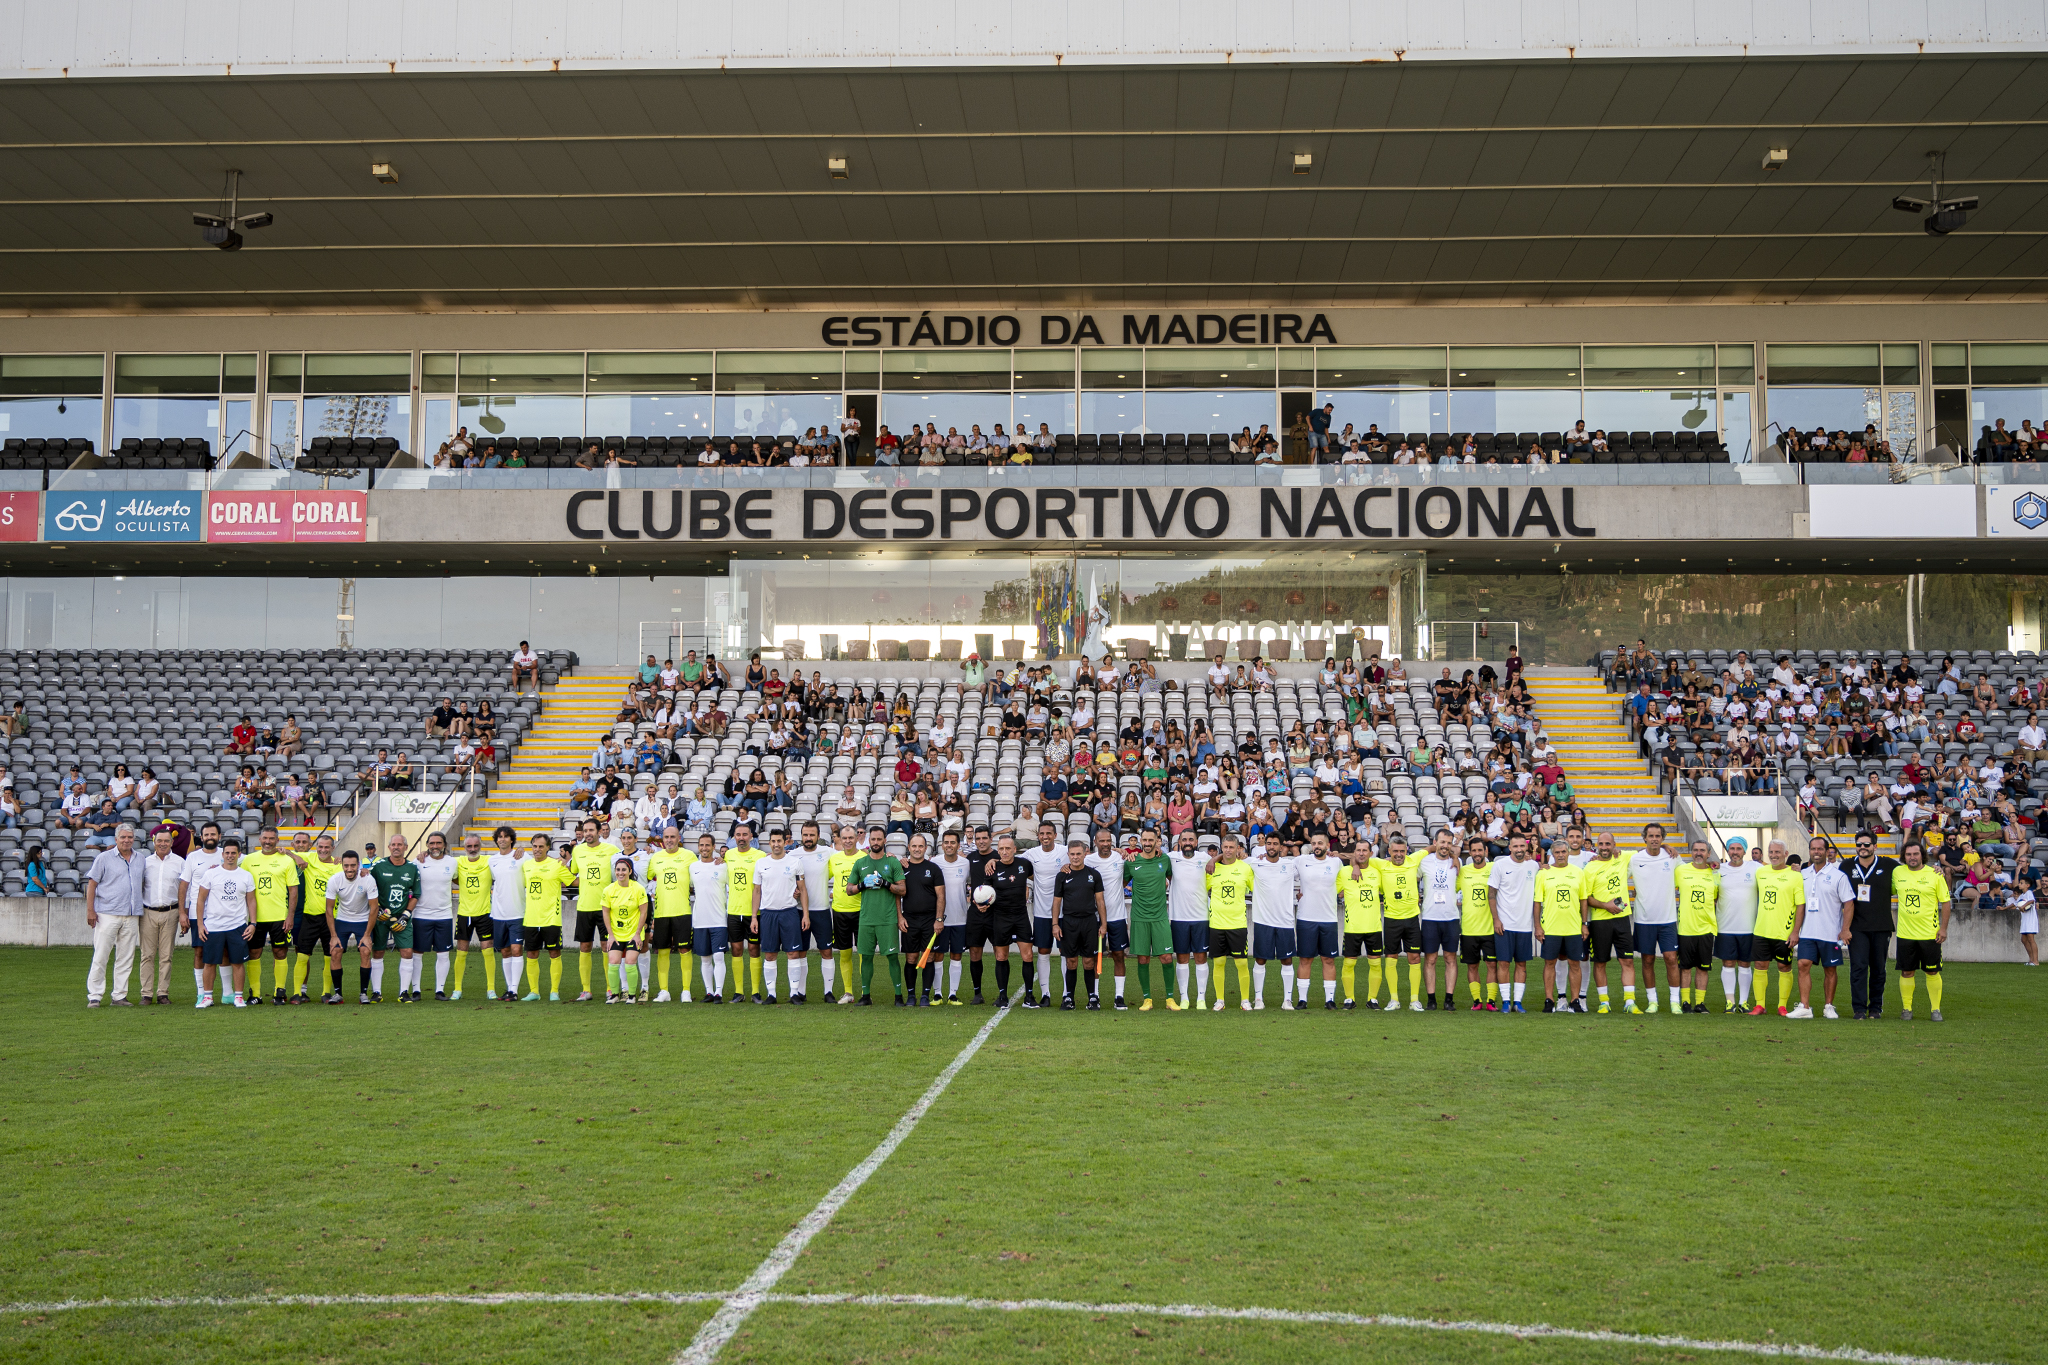 "Joga pelas Crianças" junta centenas no Estádio da Madeira